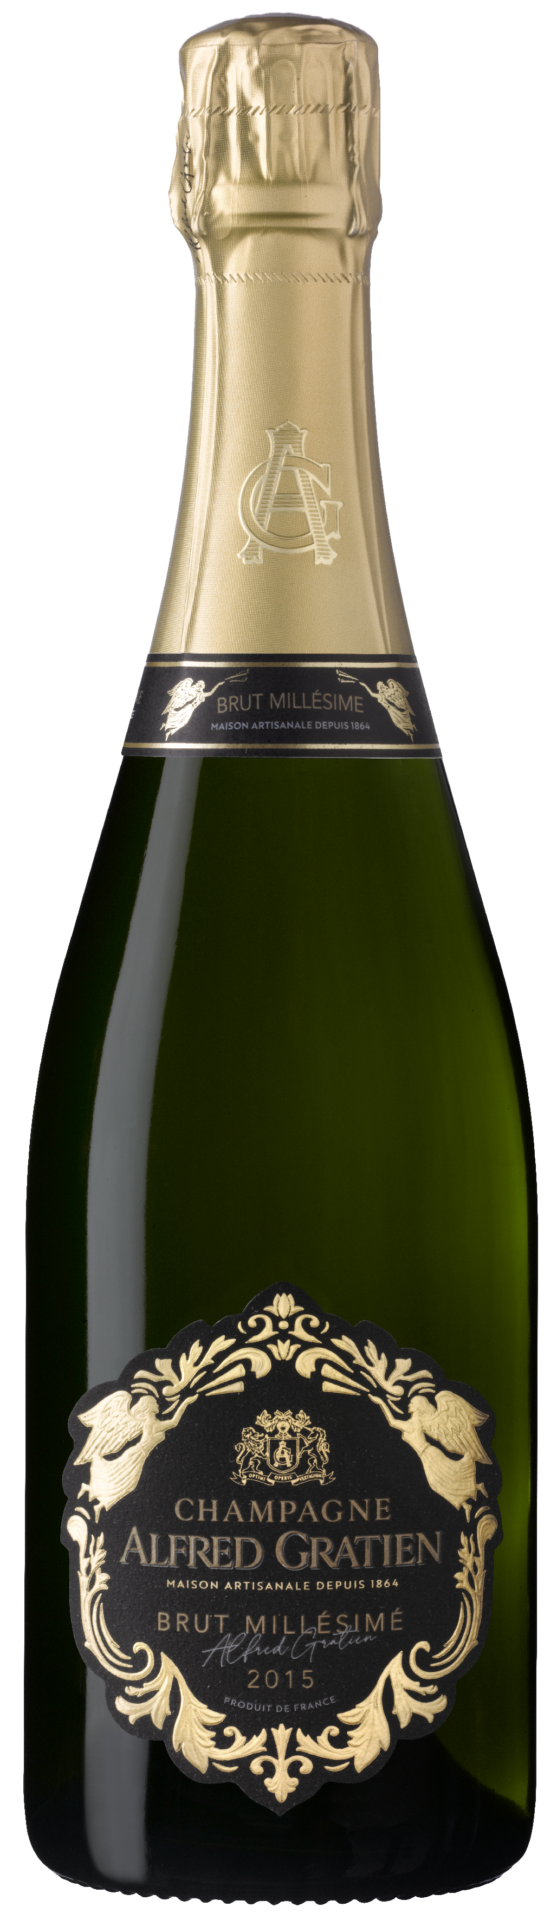 La bouteille de champagne brut millésimé 2015 d'Alfred Gratien.